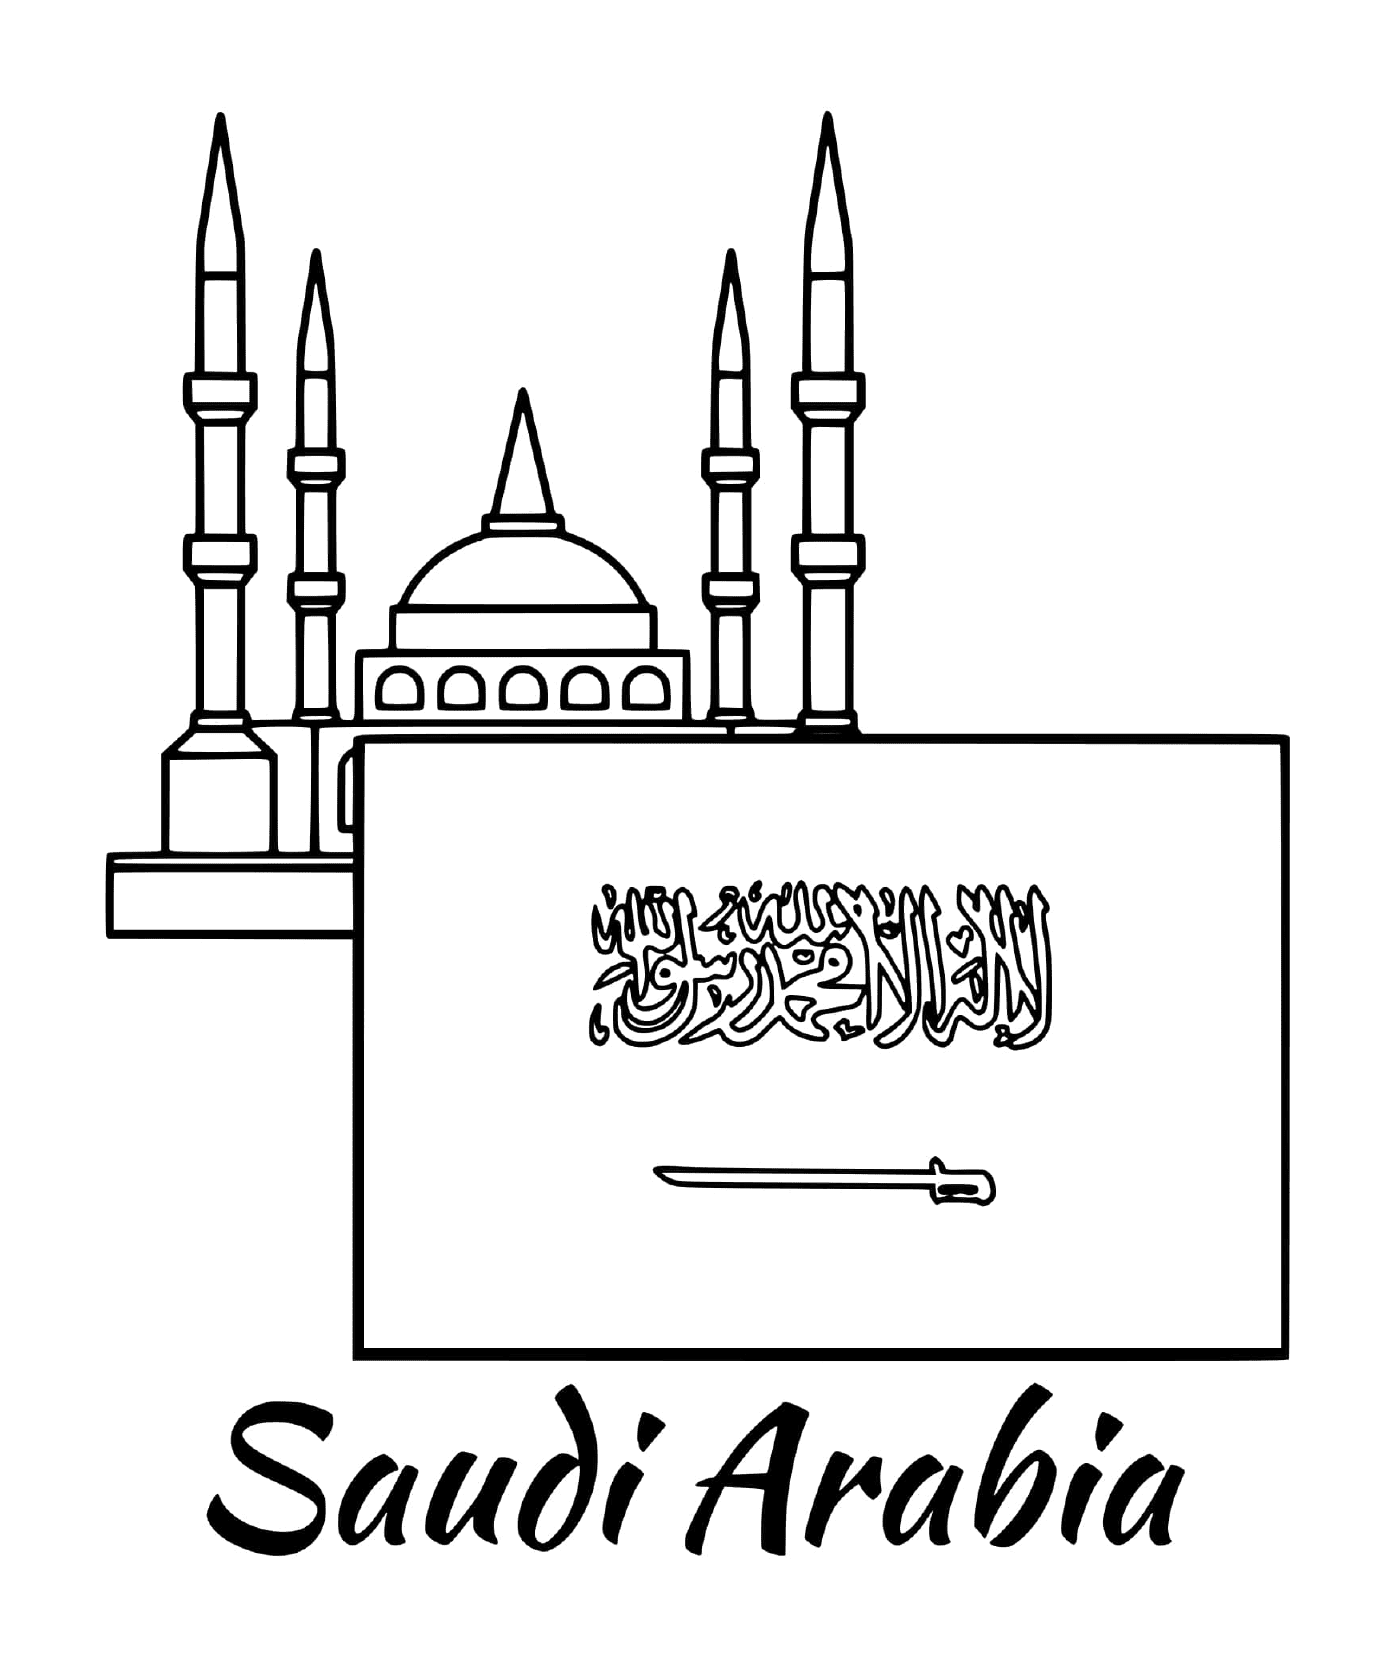  沙特阿拉伯与清真寺的国旗 